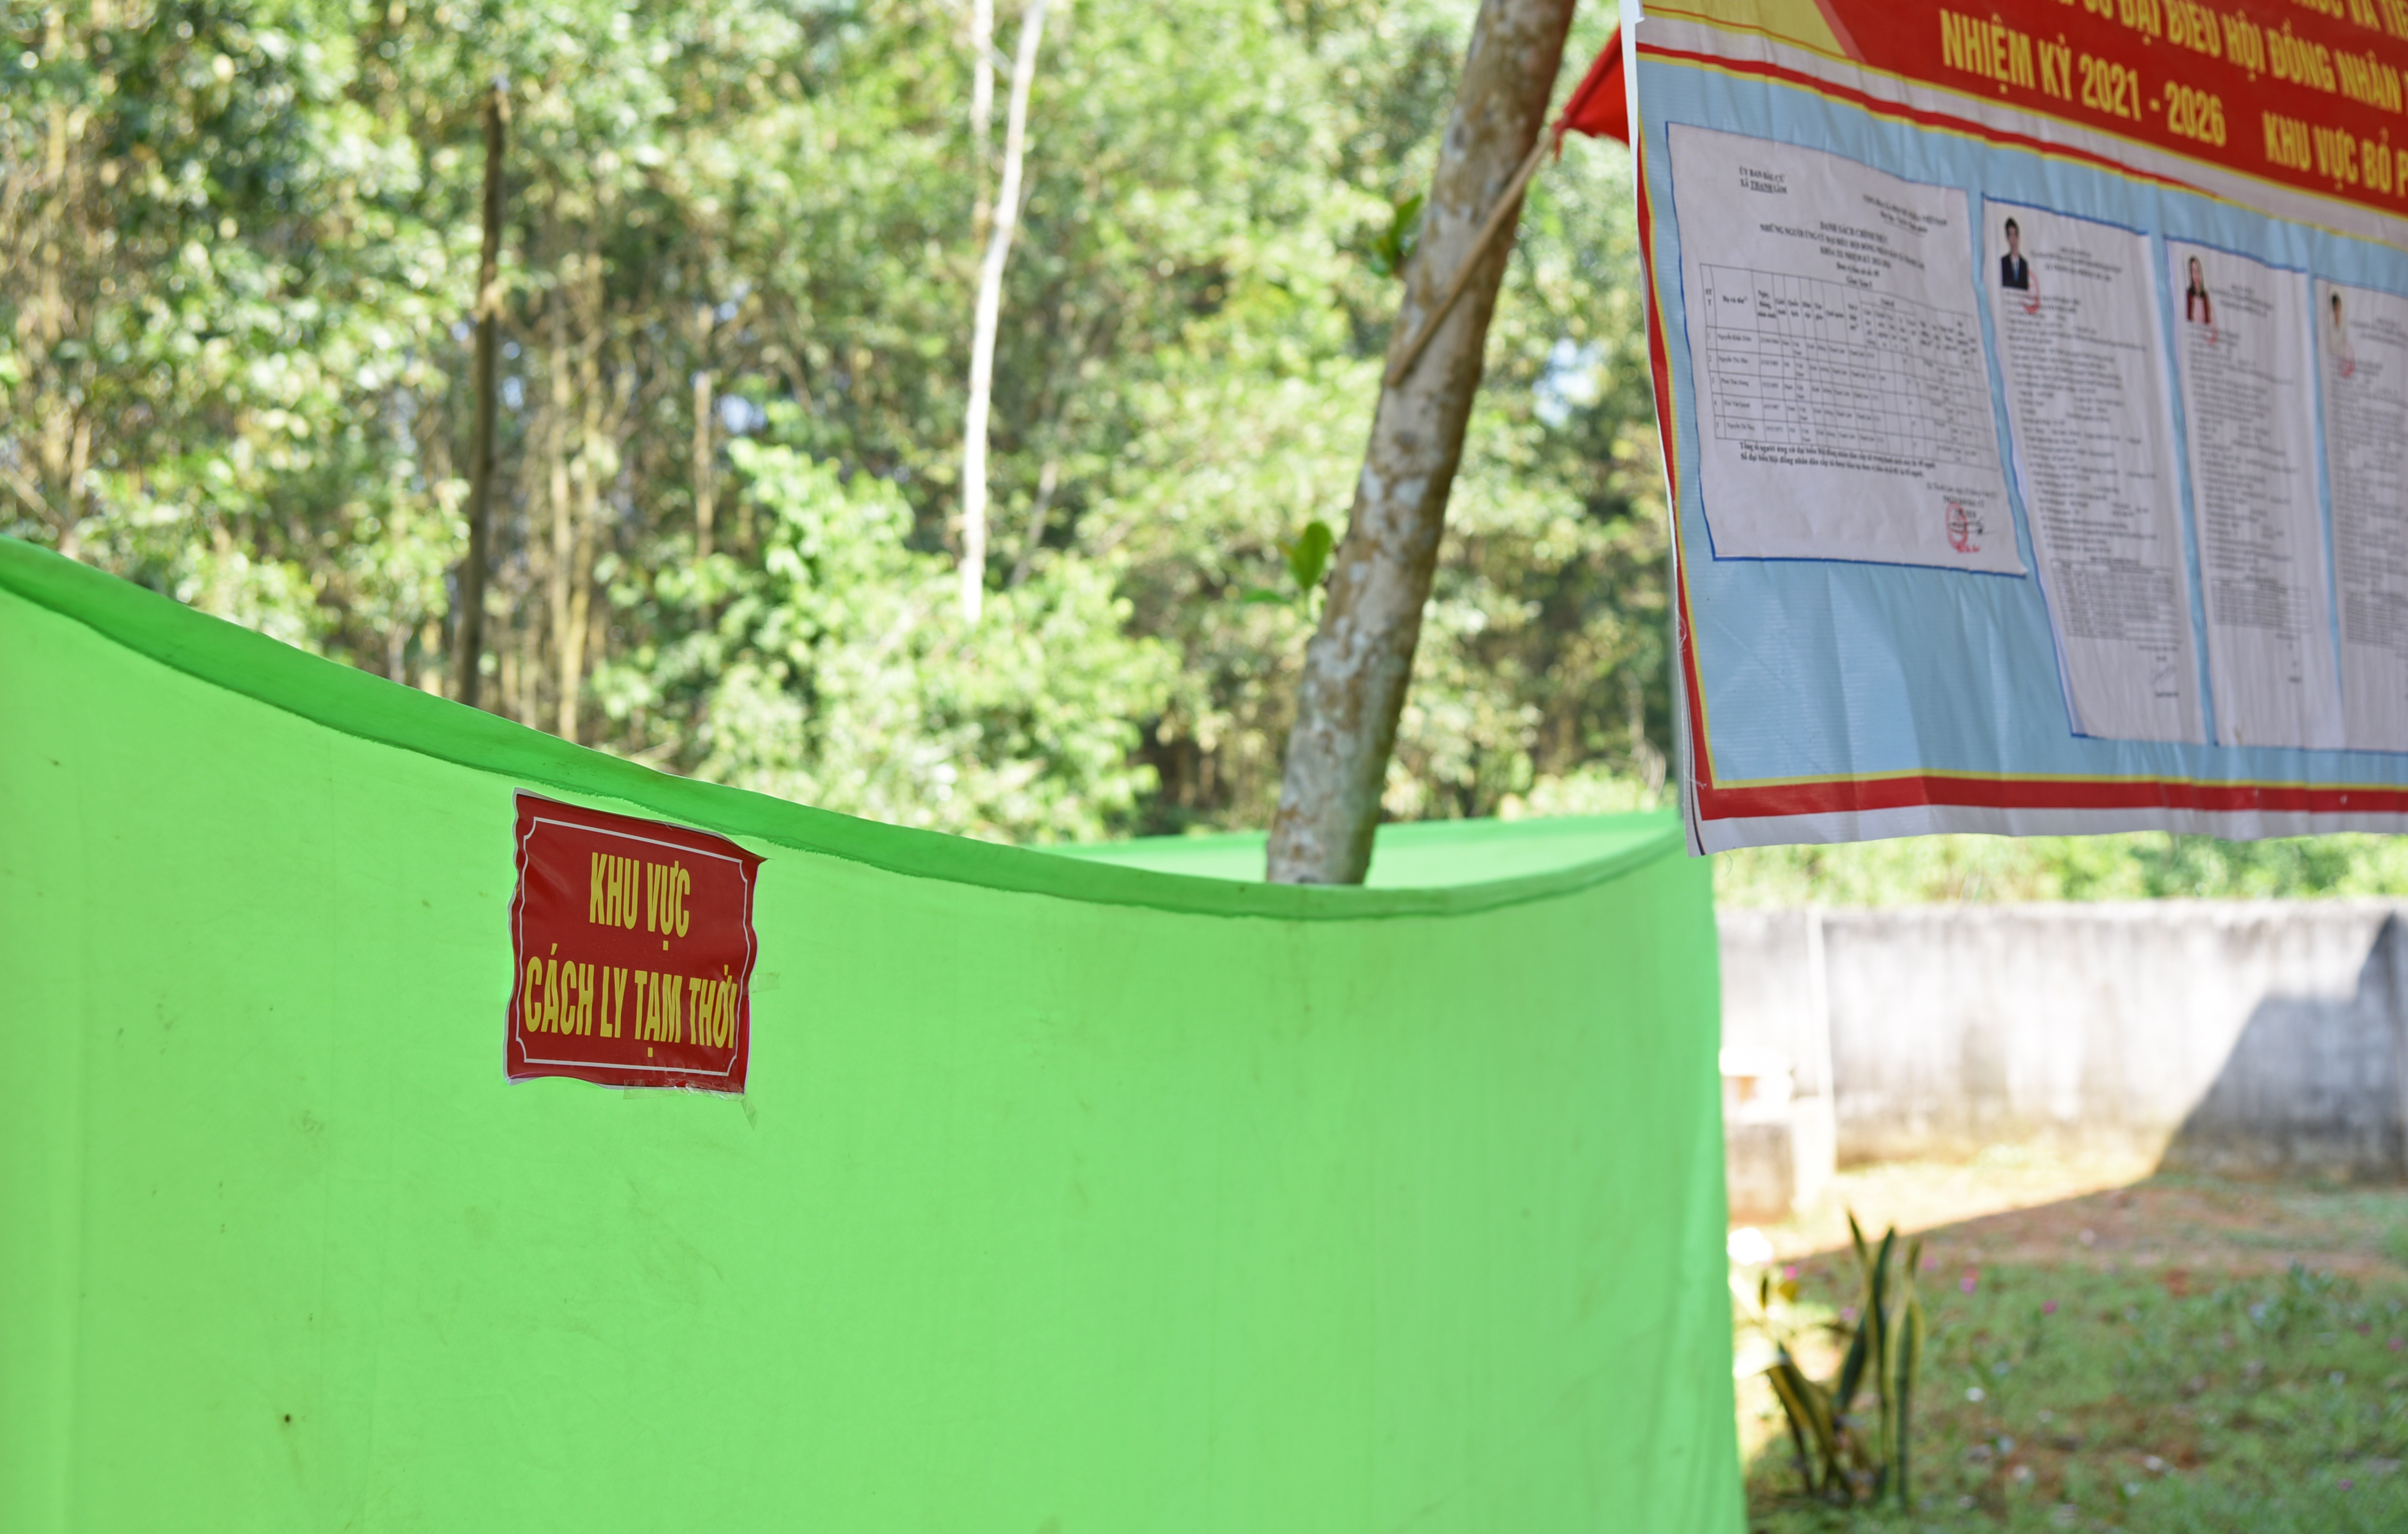 Khu vực cách ly tạm thời được bố trí tại các khu vực bầu cử của xã Thanh Lâm. Ảnh: TG